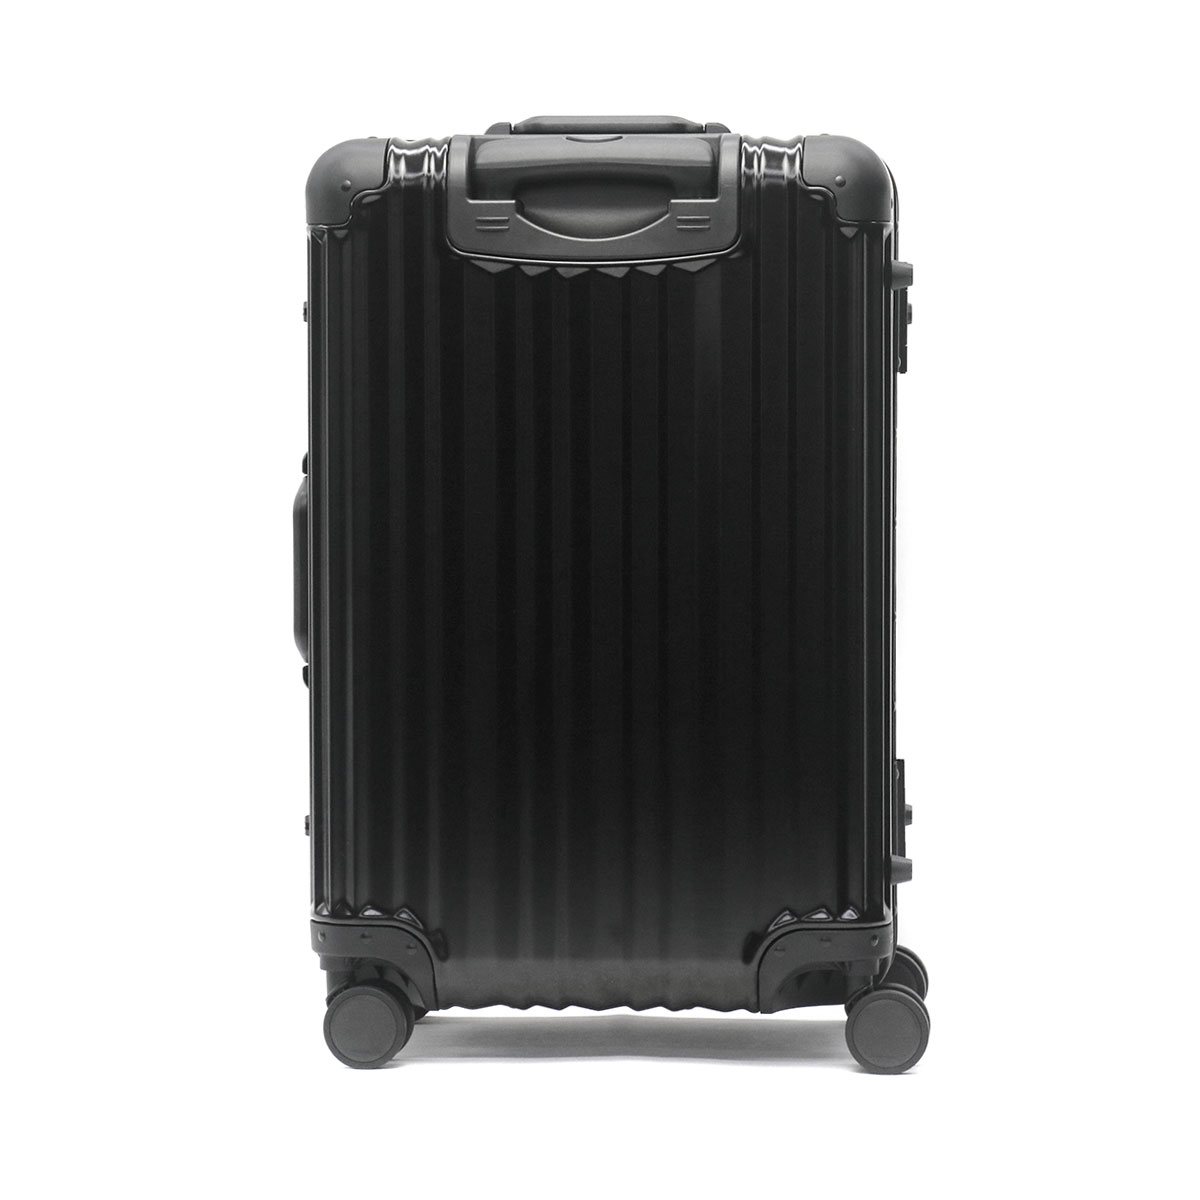 スーツケース容量41〜60Lリカルド Aileron Vault 24-inch Spinner Suitc